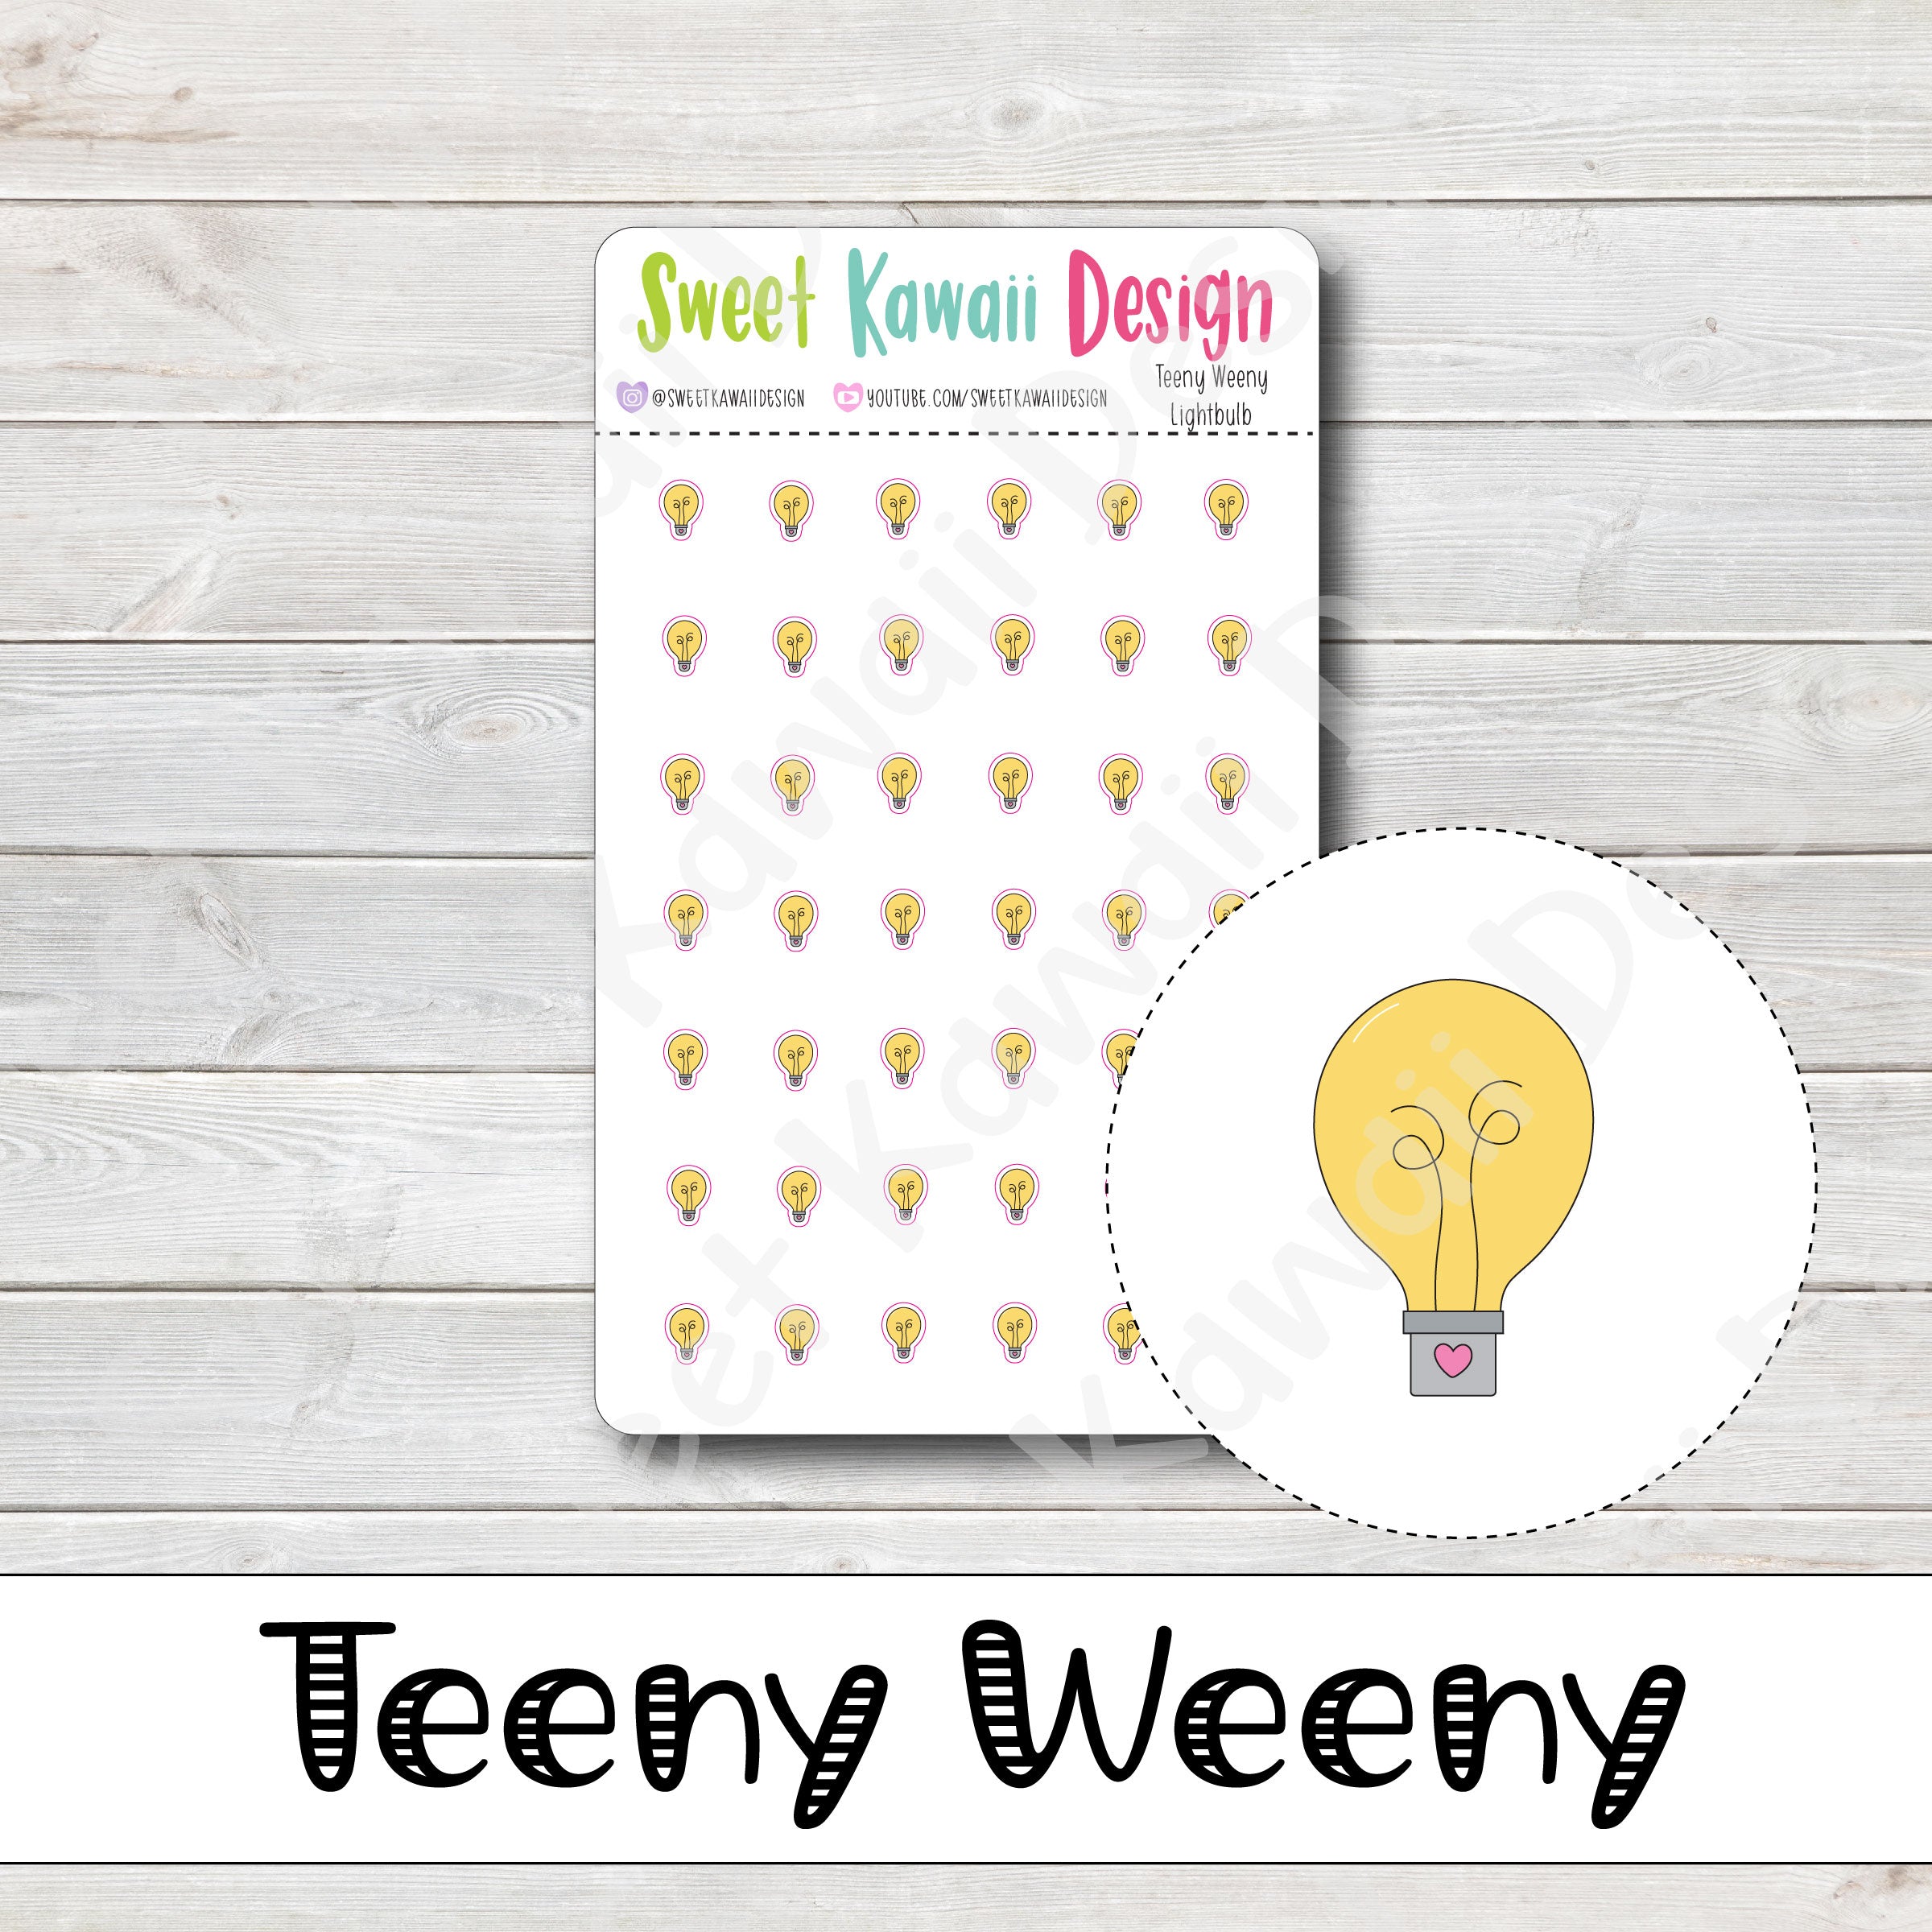 Teeny Weeny Lightbulb Stickers